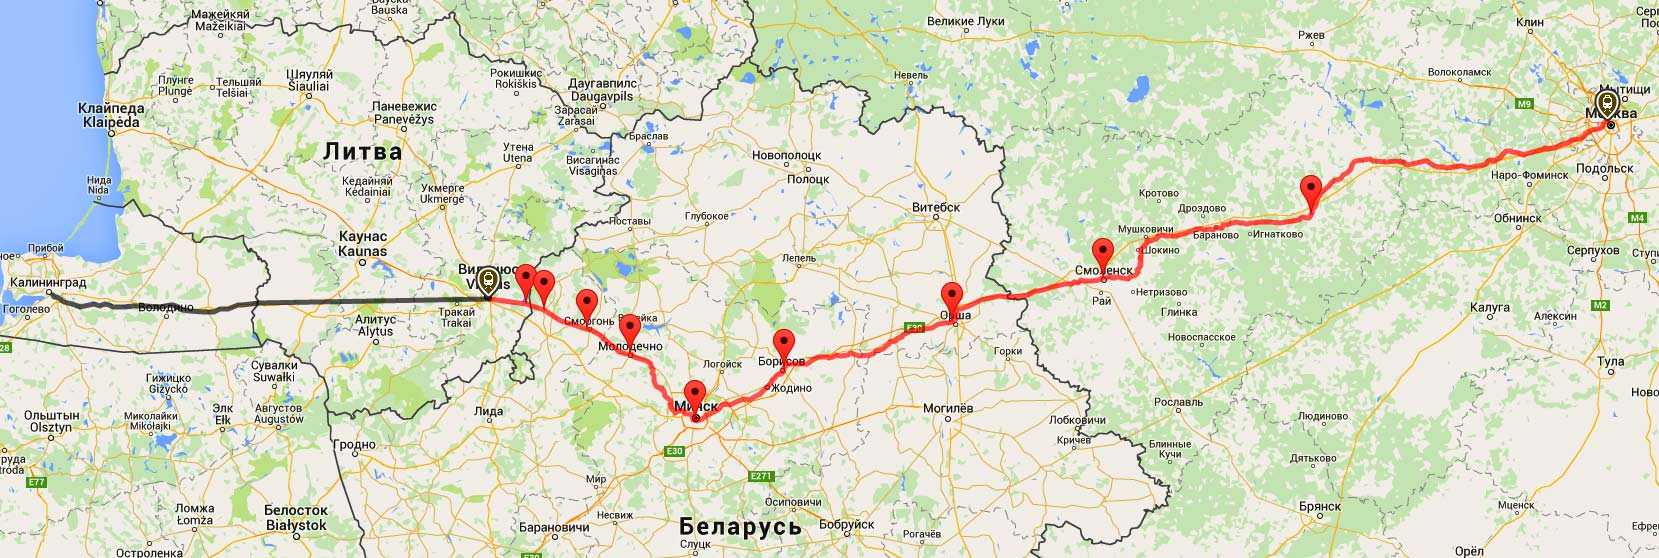 Транзитная виза через литву в калининград: как оформить для путешествия на машине и поезде